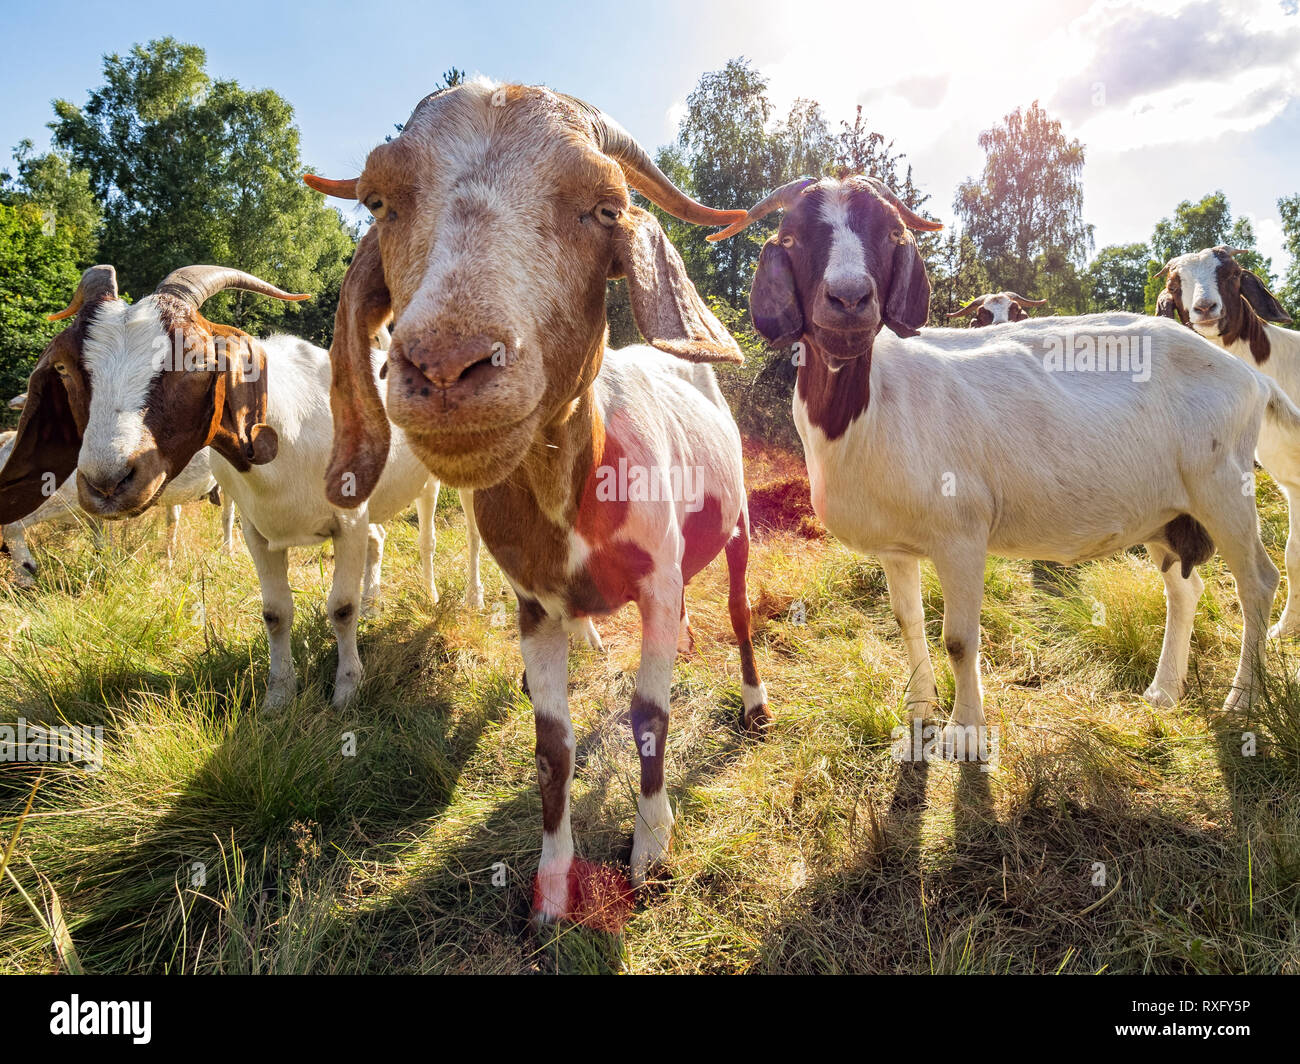 Nahaufnahme einer Ziege und Ziegen im Hintergrund Foto Stock